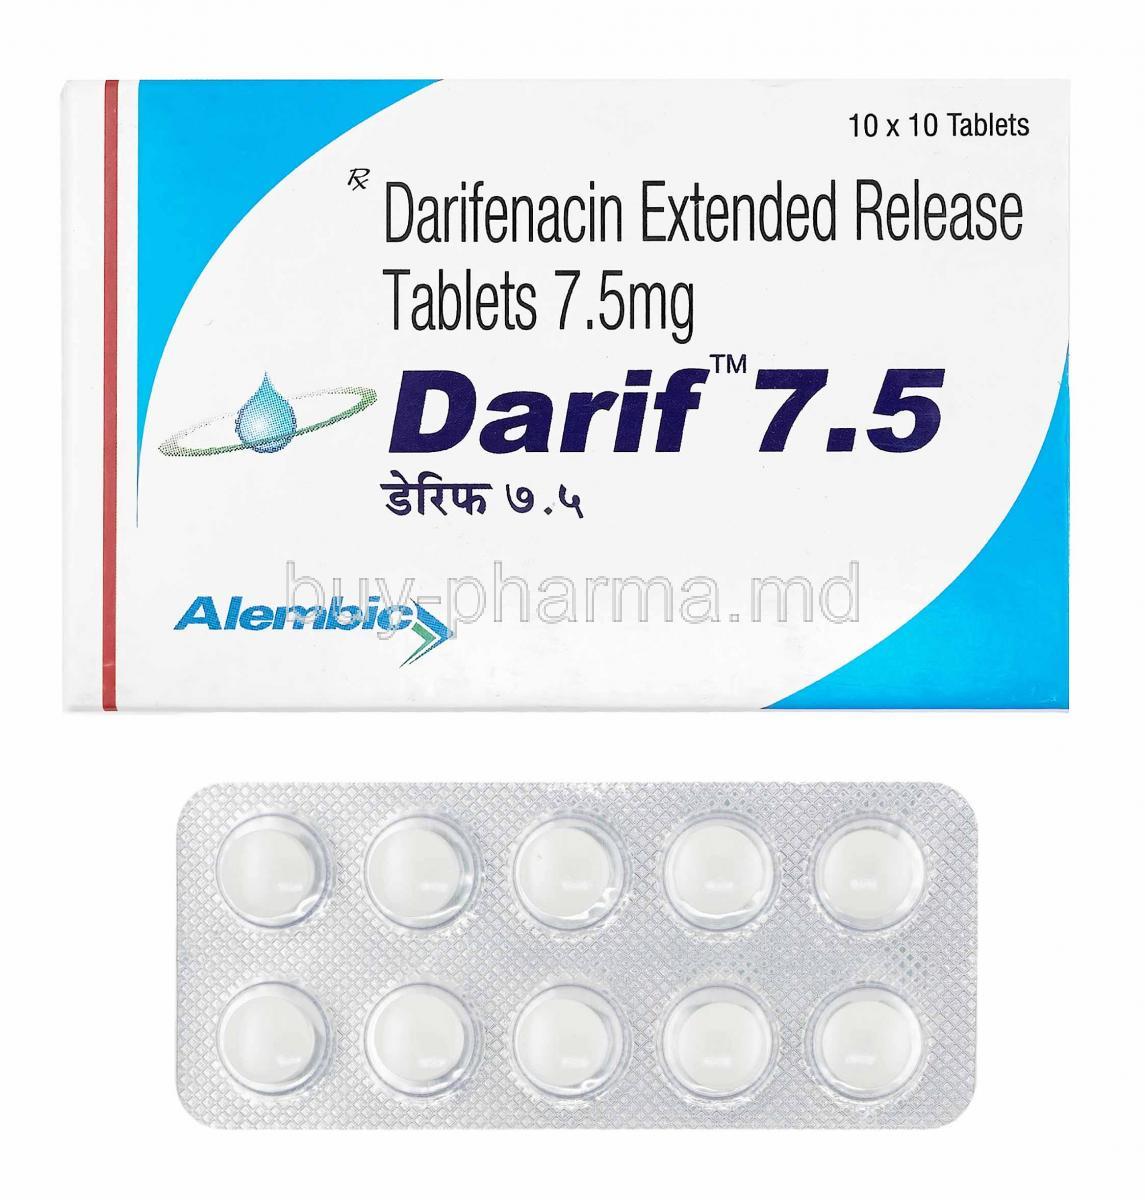 Darif, Darifenacin box and tablets